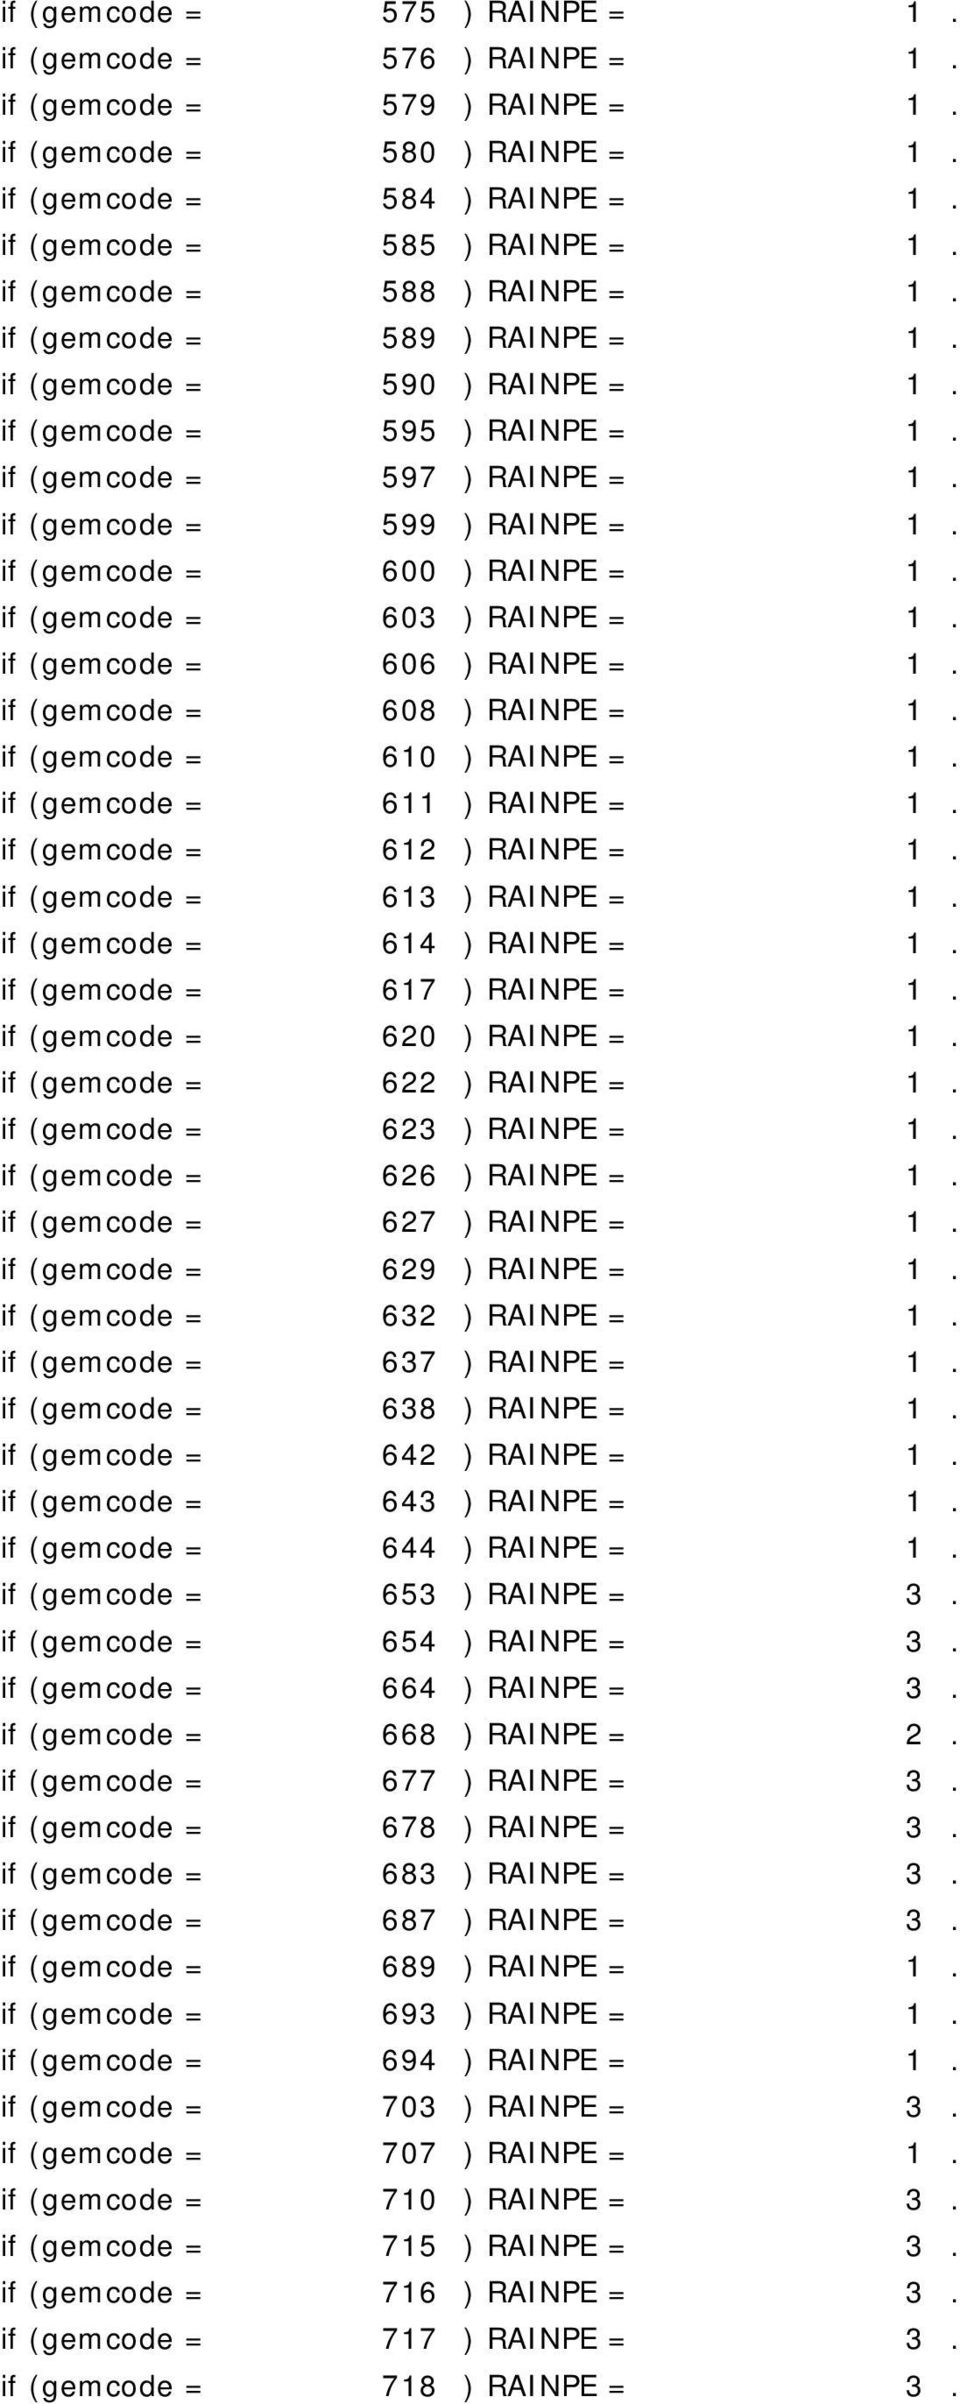 if (gemcode = 600 ) RAINPE = 1. if (gemcode = 603 ) RAINPE = 1. if (gemcode = 606 ) RAINPE = 1. if (gemcode = 608 ) RAINPE = 1. if (gemcode = 610 ) RAINPE = 1. if (gemcode = 611 ) RAINPE = 1.